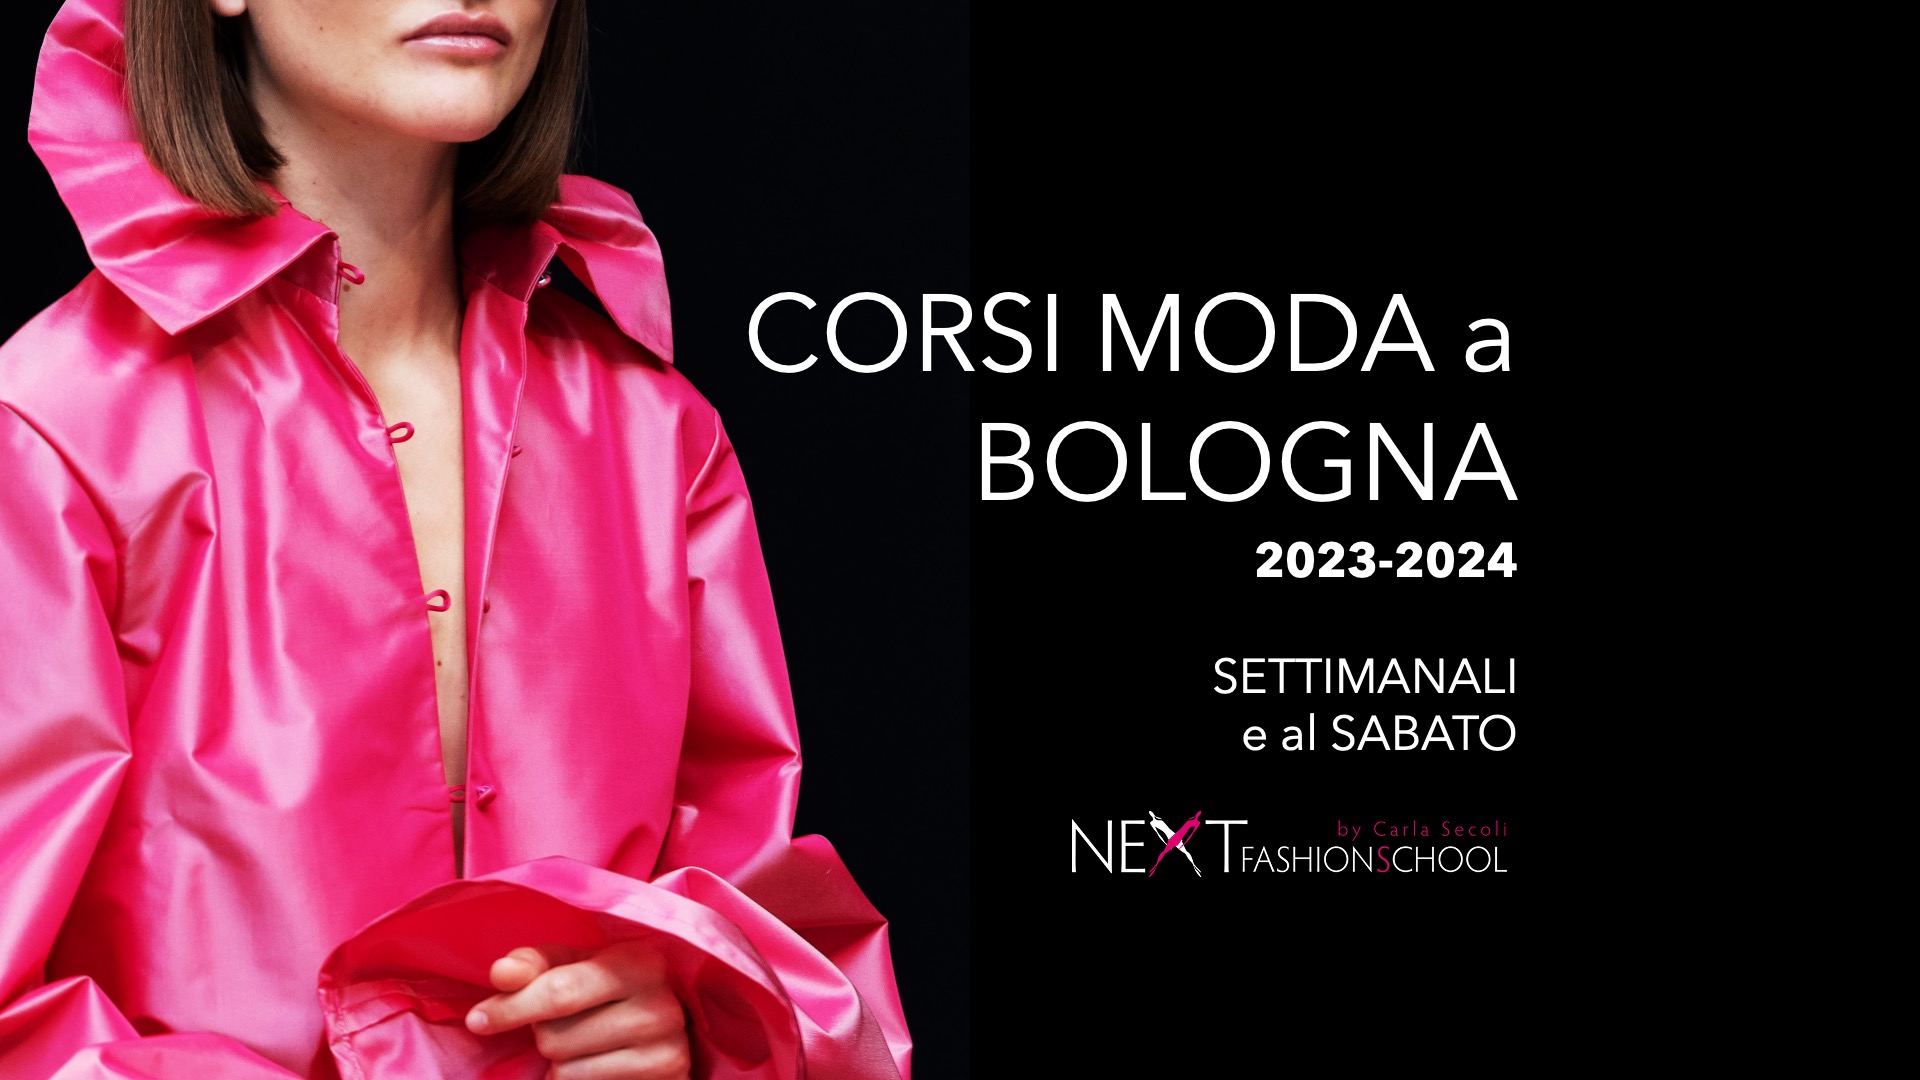 Corsi moda a Bologna 2023-2024